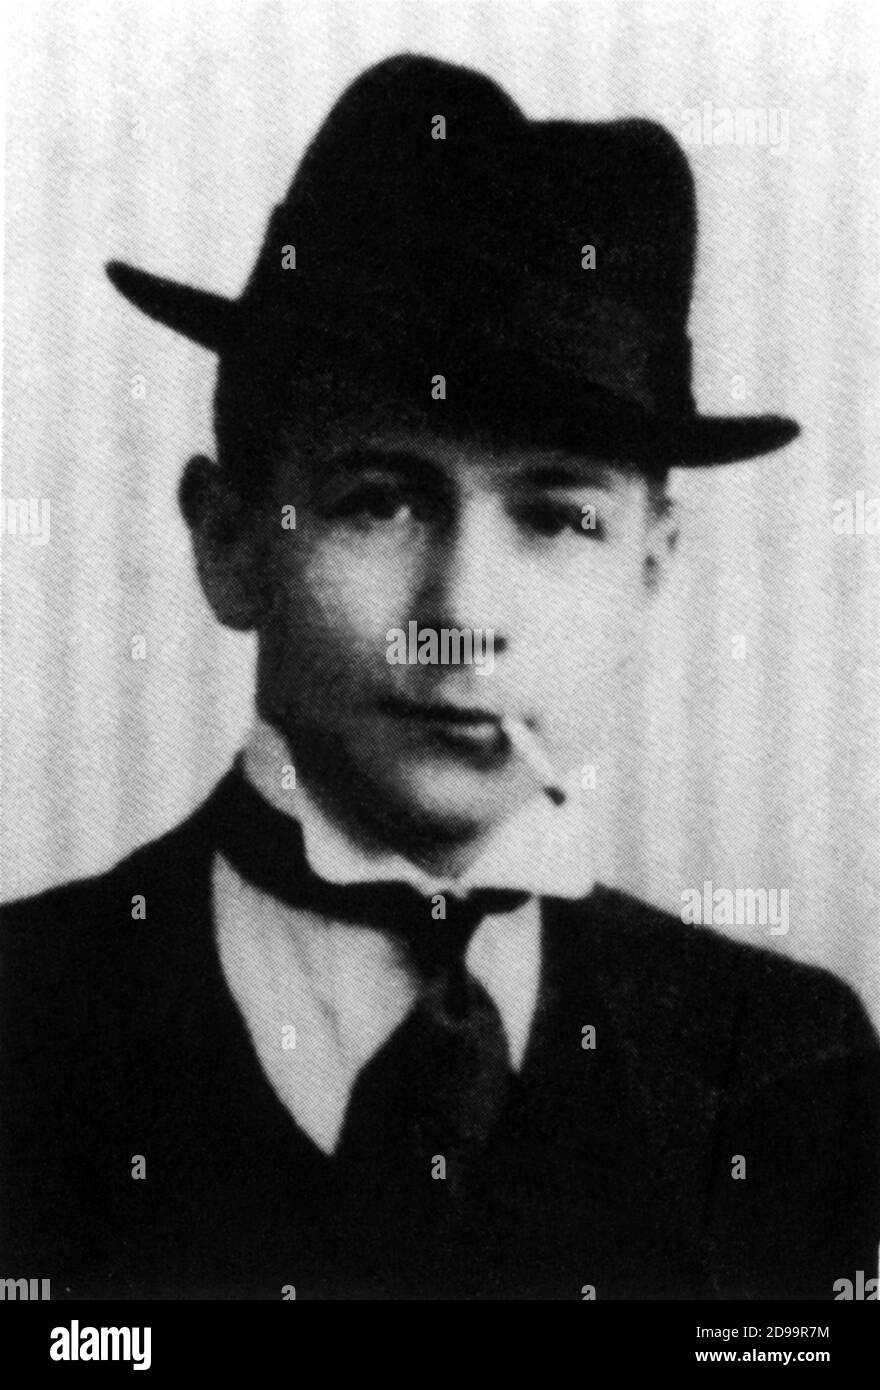 1921 , BELGIQUE : le futur écrivain GEORGES SIMENON ( 1903 - 1989 ) A 18 ans quand était un jeune reporter pour la ' Gazette de Liége ' comme ' George SIM' pseudonyme - SCRITTORE - GIORNALISTA - LETTERATURA - letterato - chapeau - collier - cappello - colletto - cravate - cravatta - giallo - gialli - poliziesco - poliziesca - Histoire détective - cigarette - sigaretta - fumo - fumée - personnalité fumage - personalità che fumano --- Archivio GBB Banque D'Images